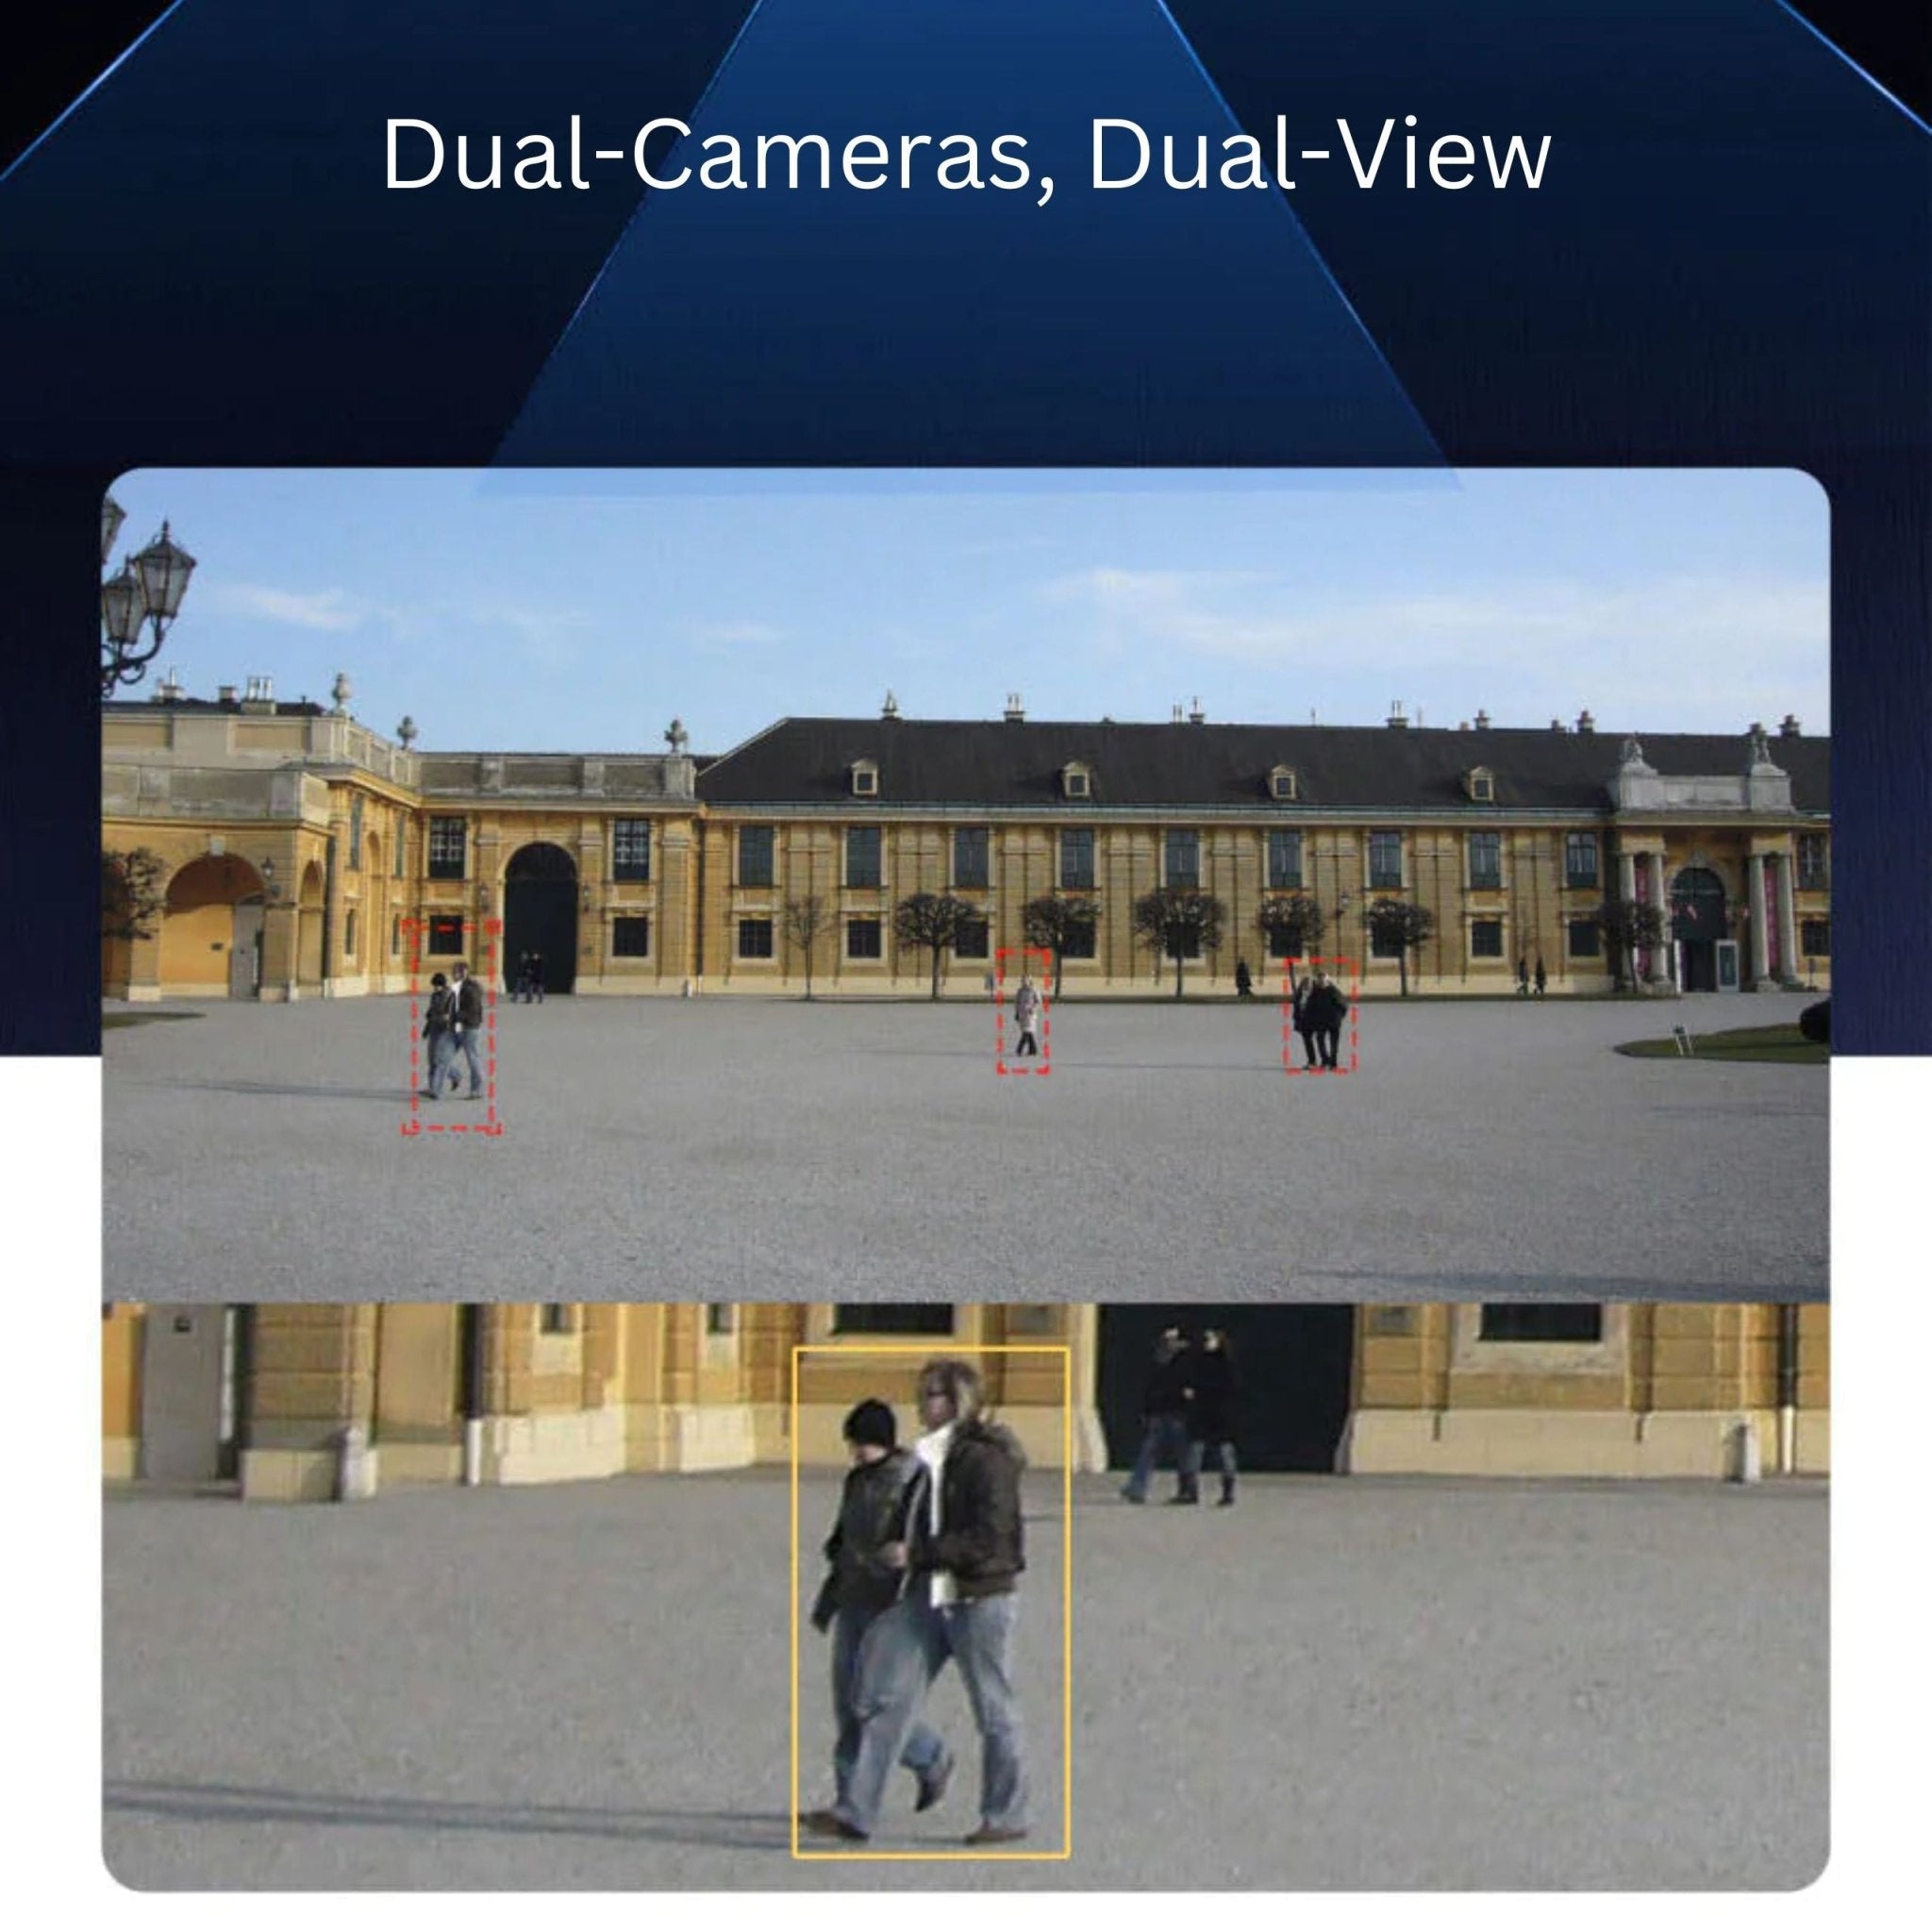 Solar Dual Camera 4X Wifi & 4G Smart PTZ Y5 - Grey